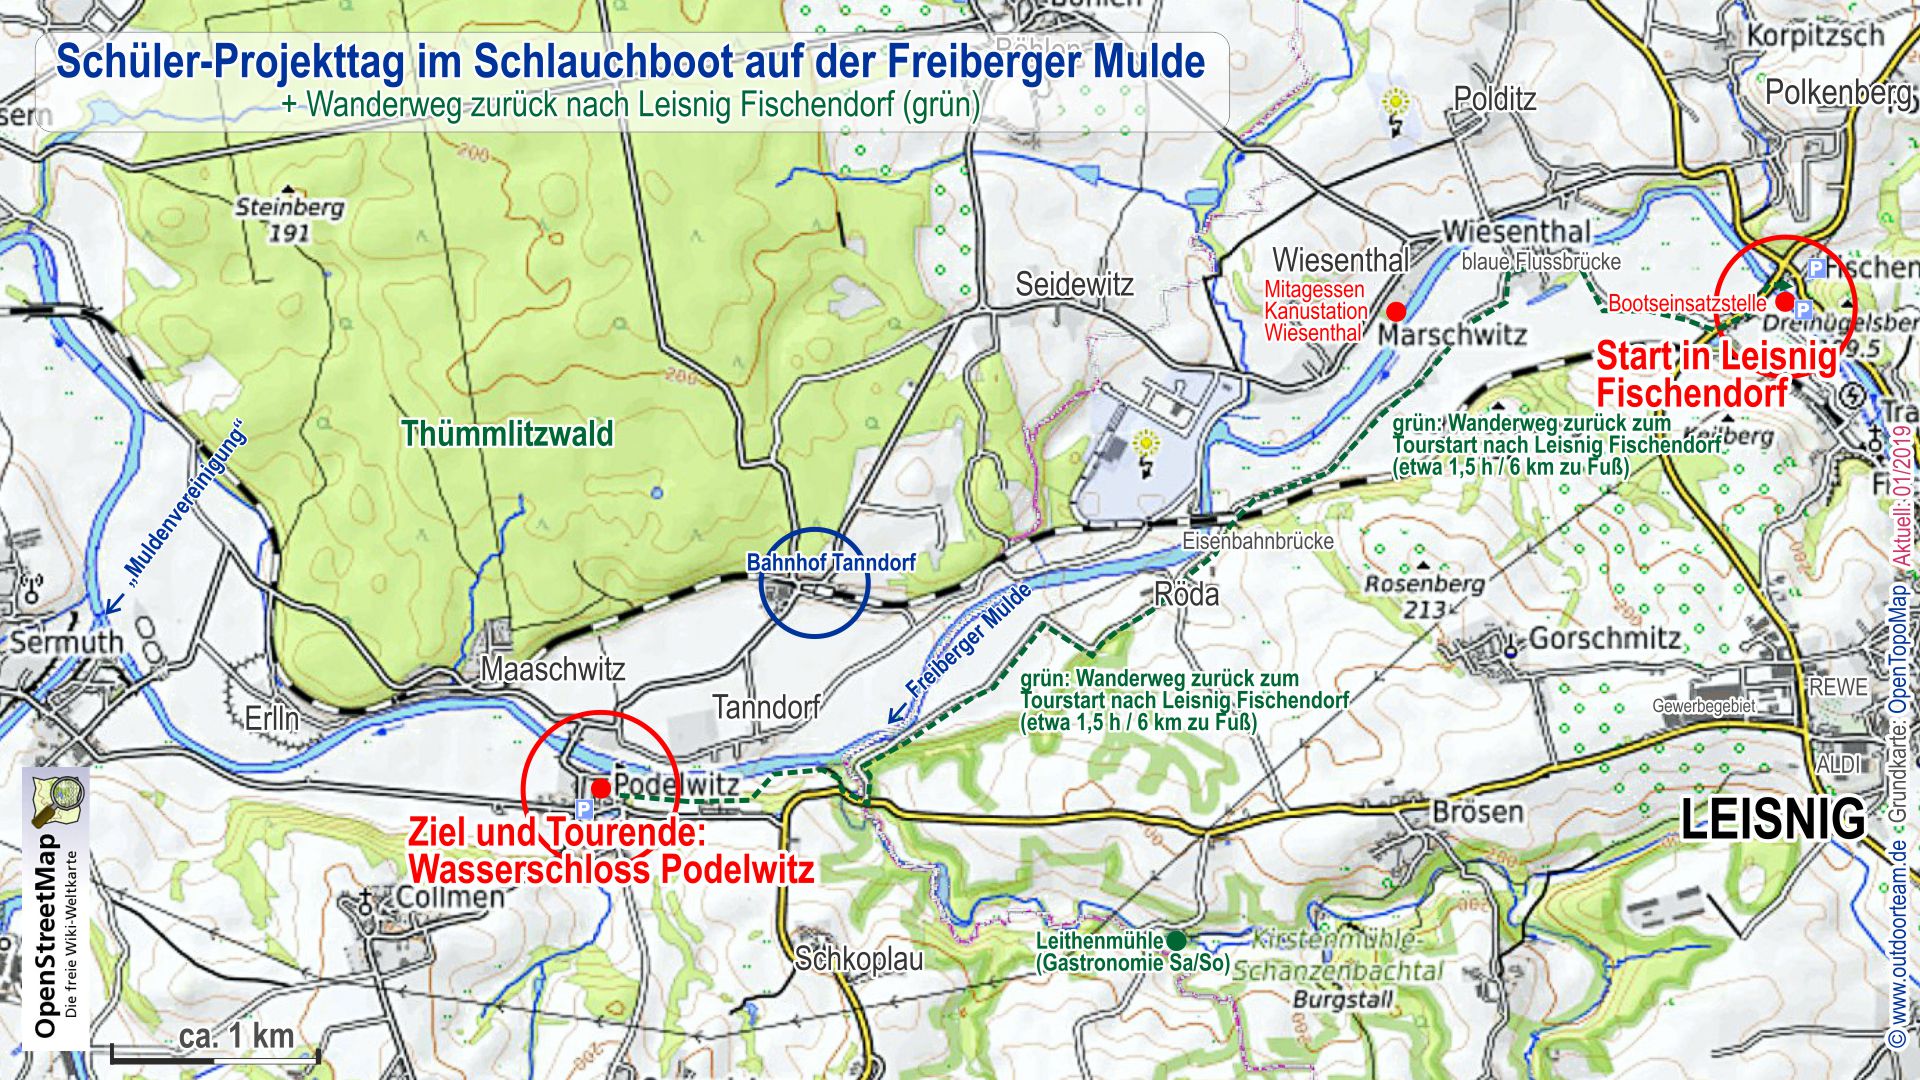 Streckenverlauf und regionale Karte Schüler - Projekttag Schlauchboottour auf der Freiberger Mulde (inkl. grün markierter Rückwanderweg)